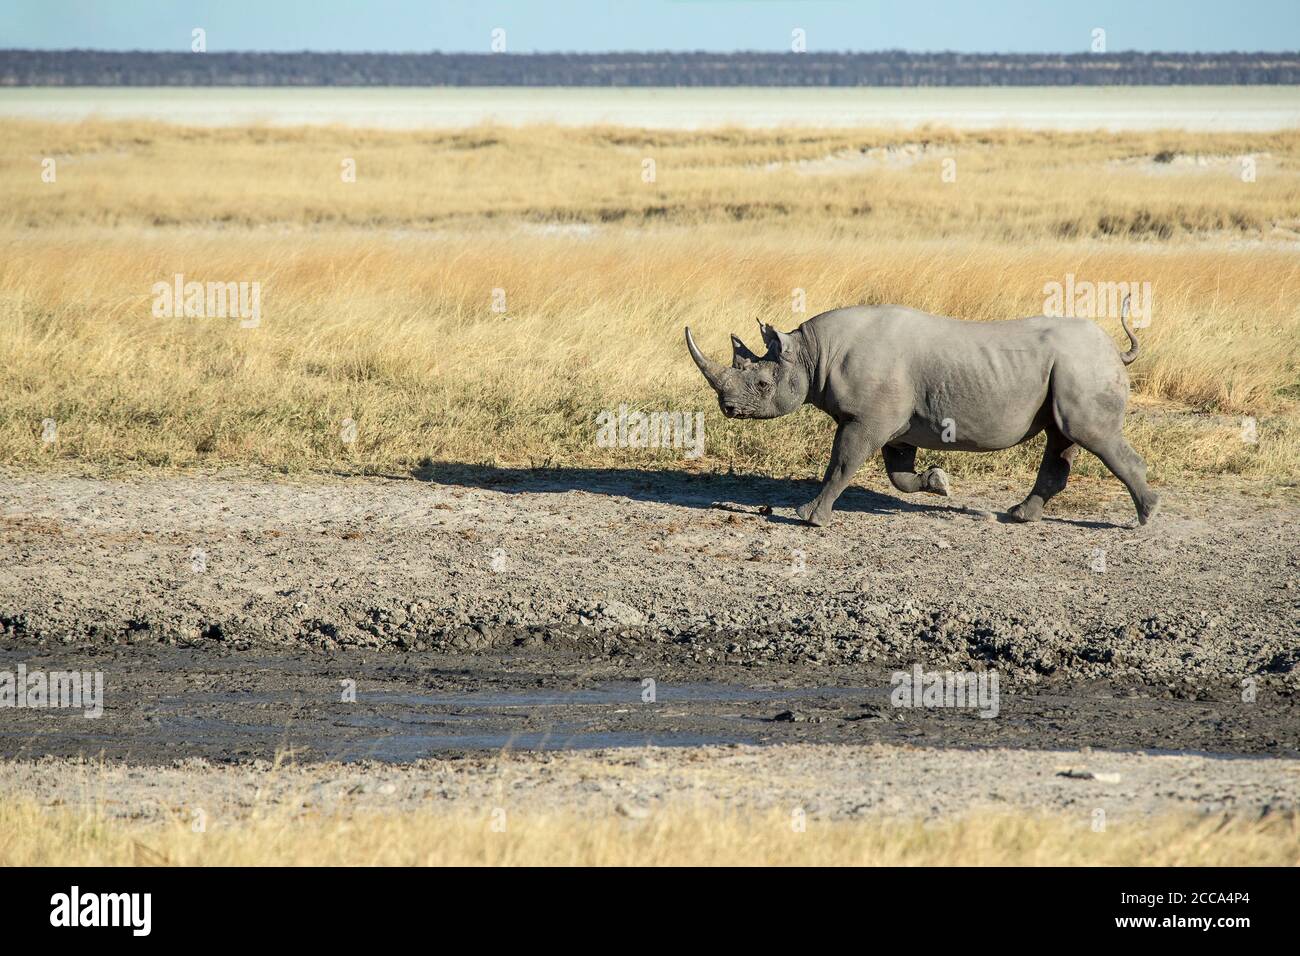 Rinoceronte negro corriendo en las llanuras de la sabana de Etosha con hierba alta y la cacerola en el fondo. Foto de stock